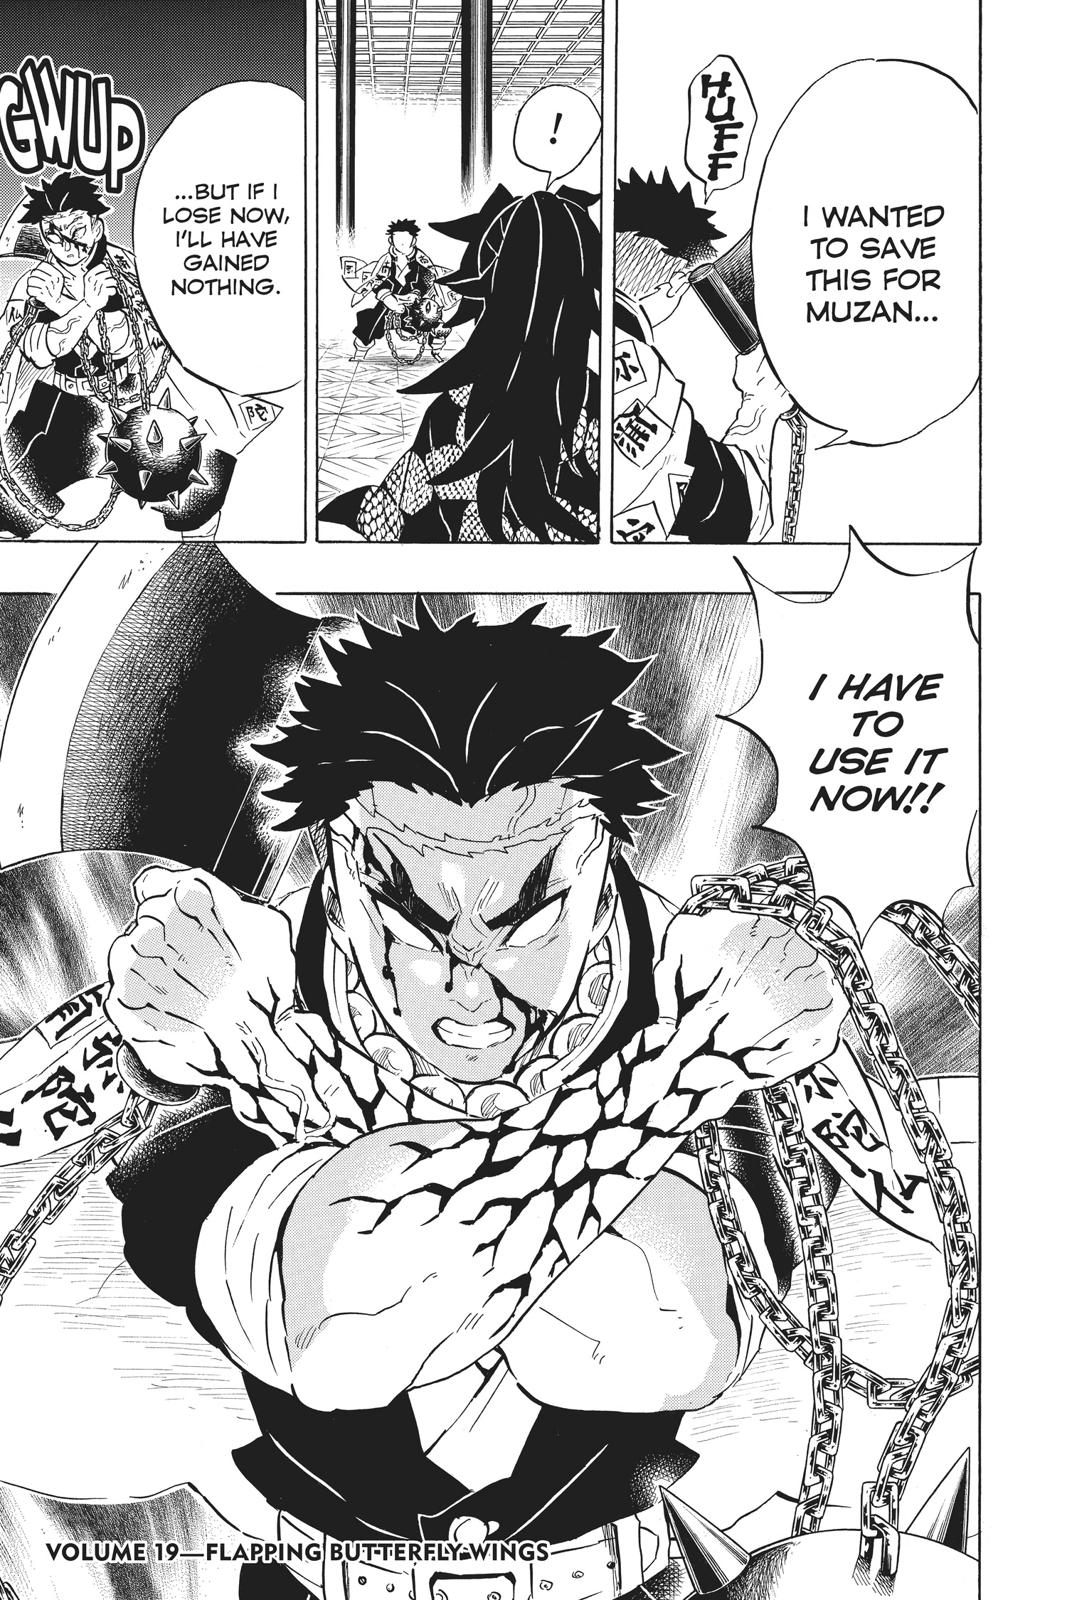 Demon Slayer Manga Manga Chapter - 169 - image 18